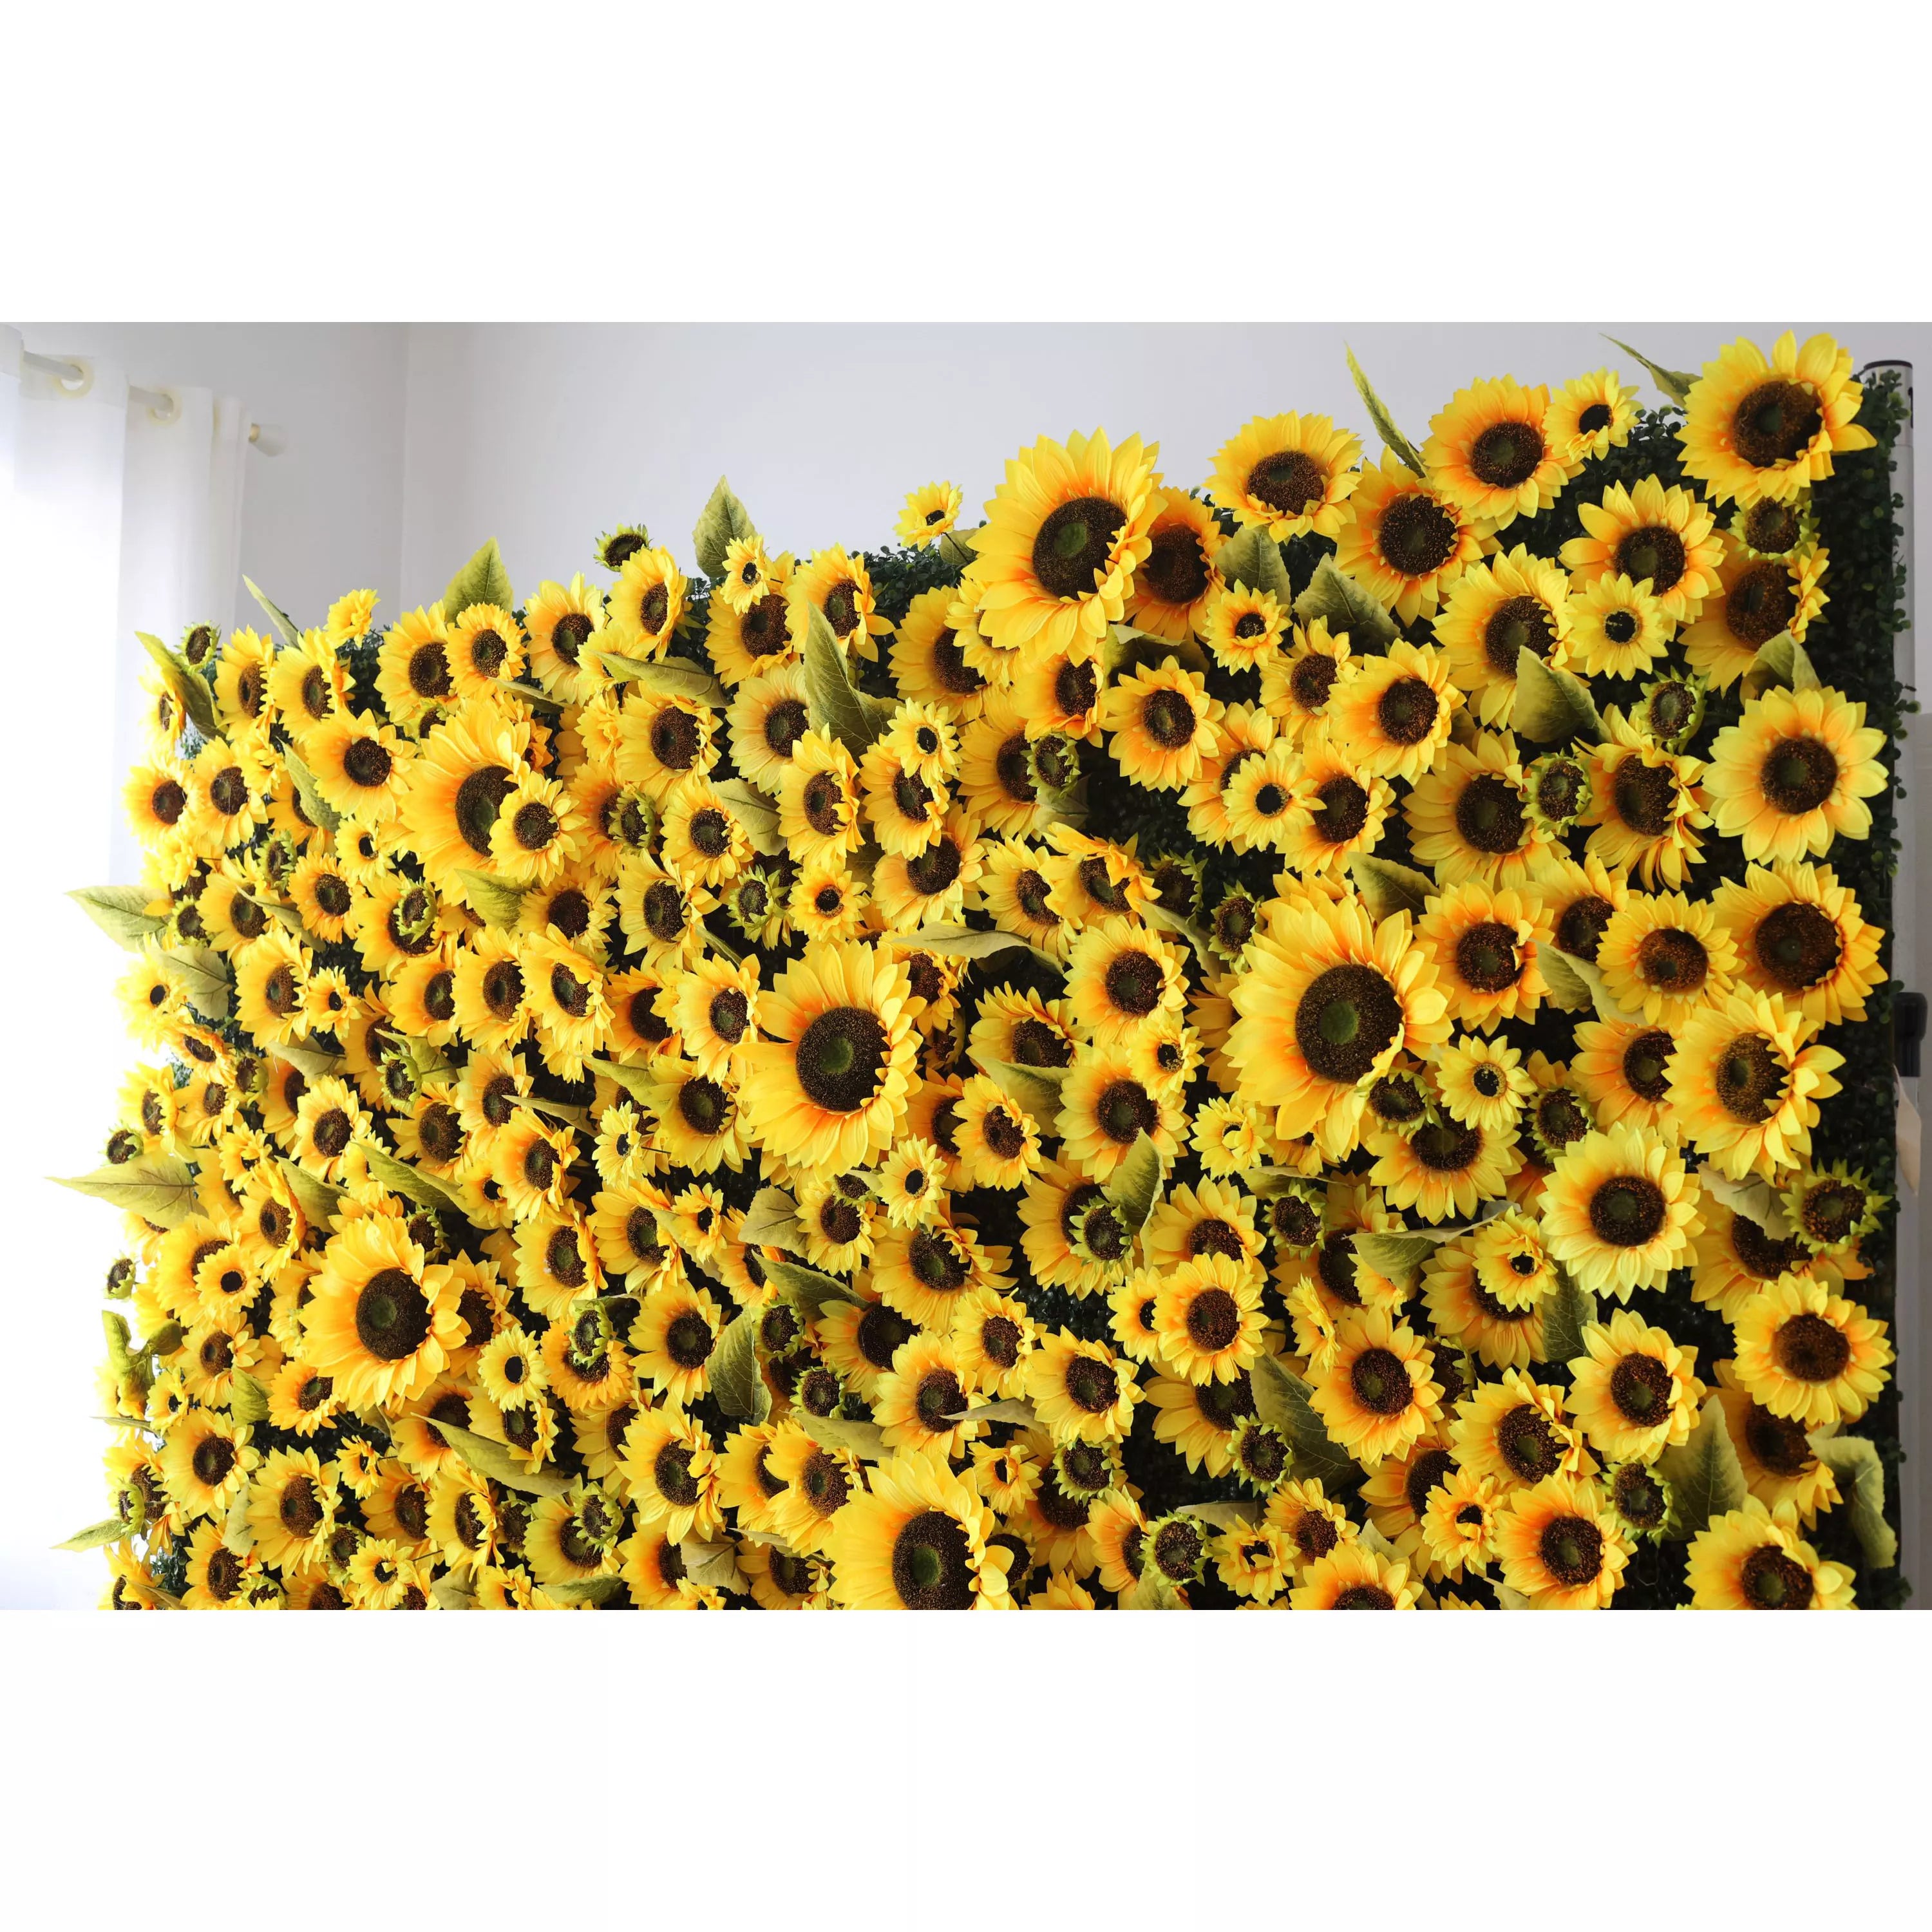 خلفية جدارية زهور فالارز زهرية صناعية: جدارية بنعمة الشمس تزهر زهور صناعية خلفية-حقول عباد الشمس صفراء مشعة